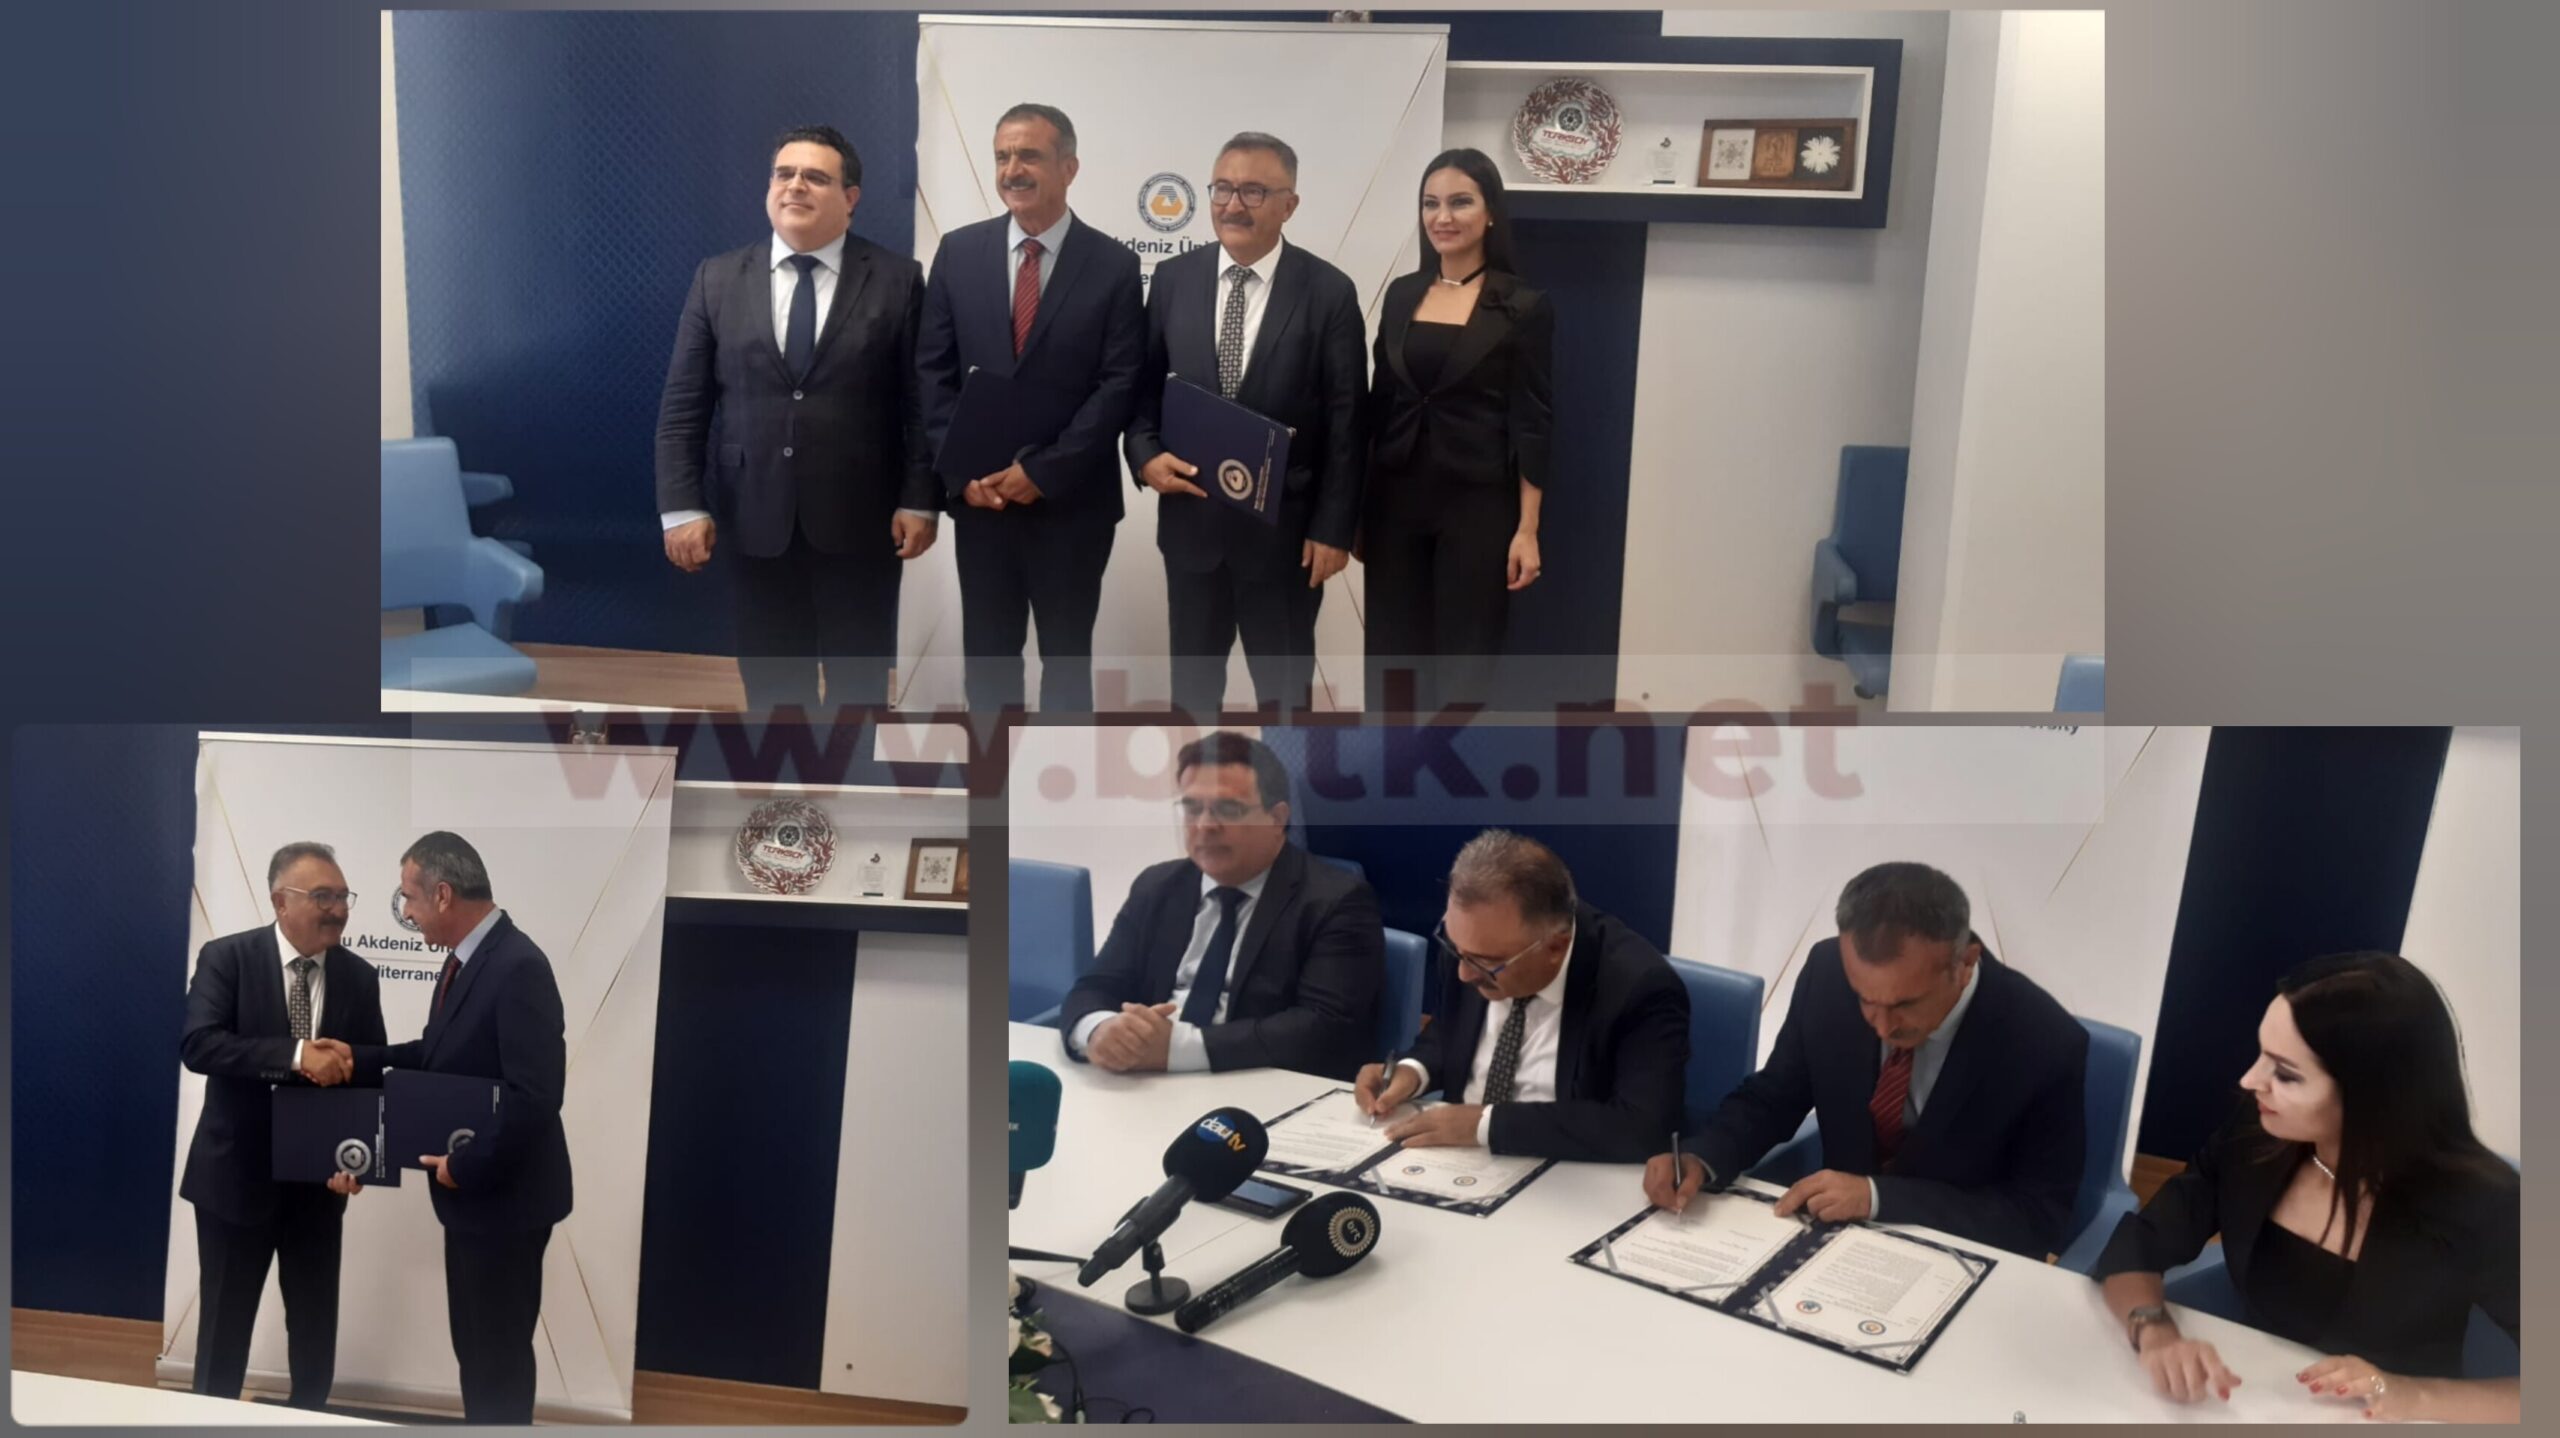 Doğu Akdeniz Üniversitesi ile Gazimağusa Belediyesi arasında işbirliği protokolü imzalandı